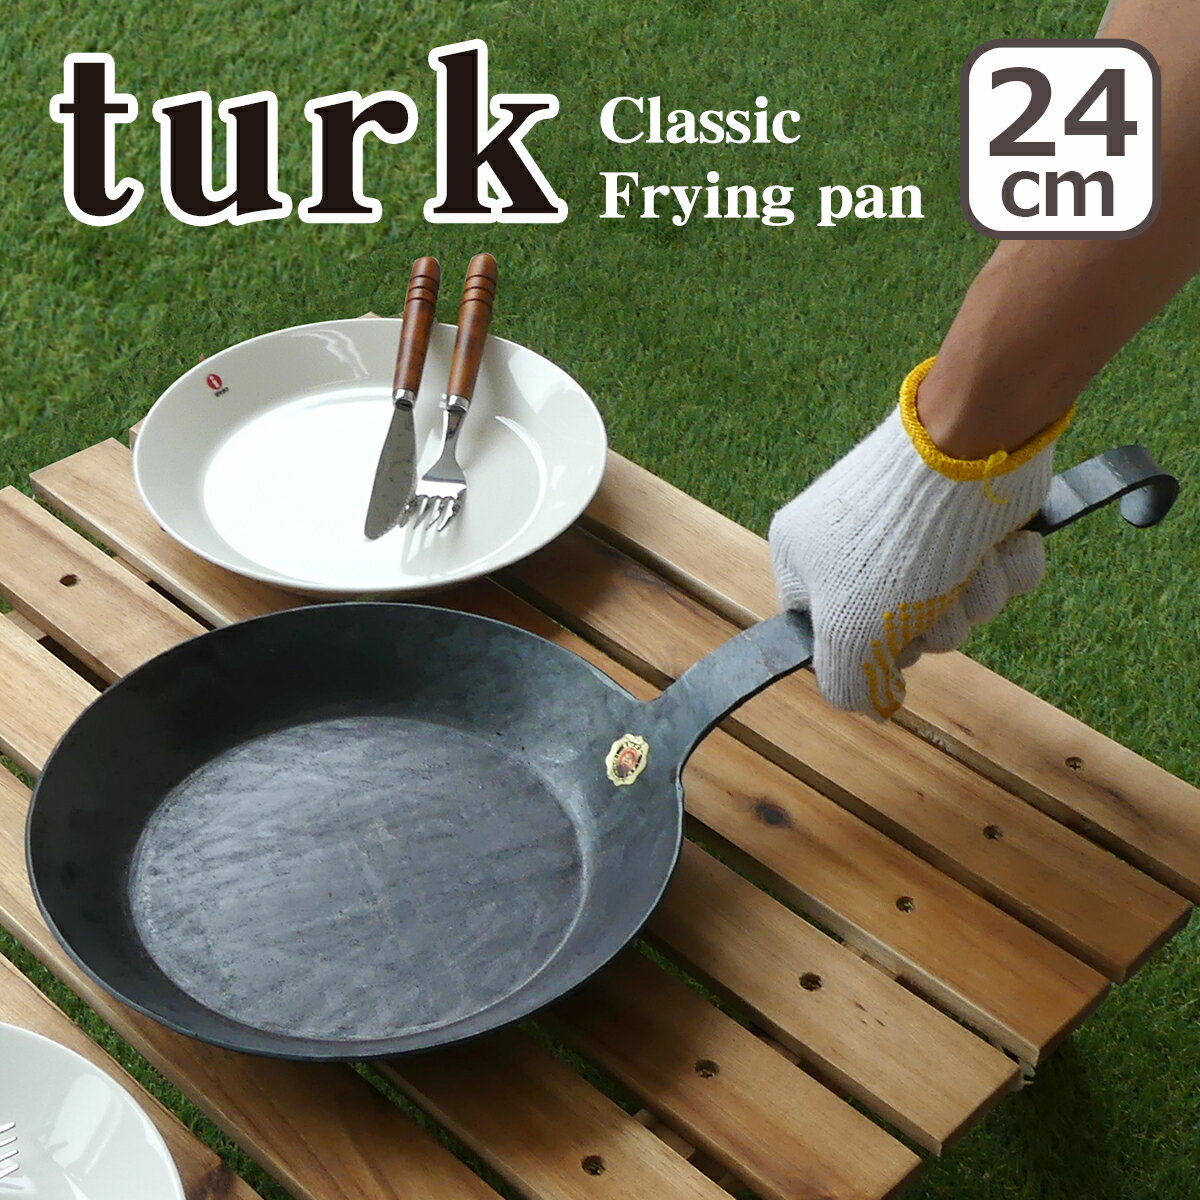 【クーポン4種あり】ターク フライパン クラシック 24cm 65524 turk Classic Frying pan